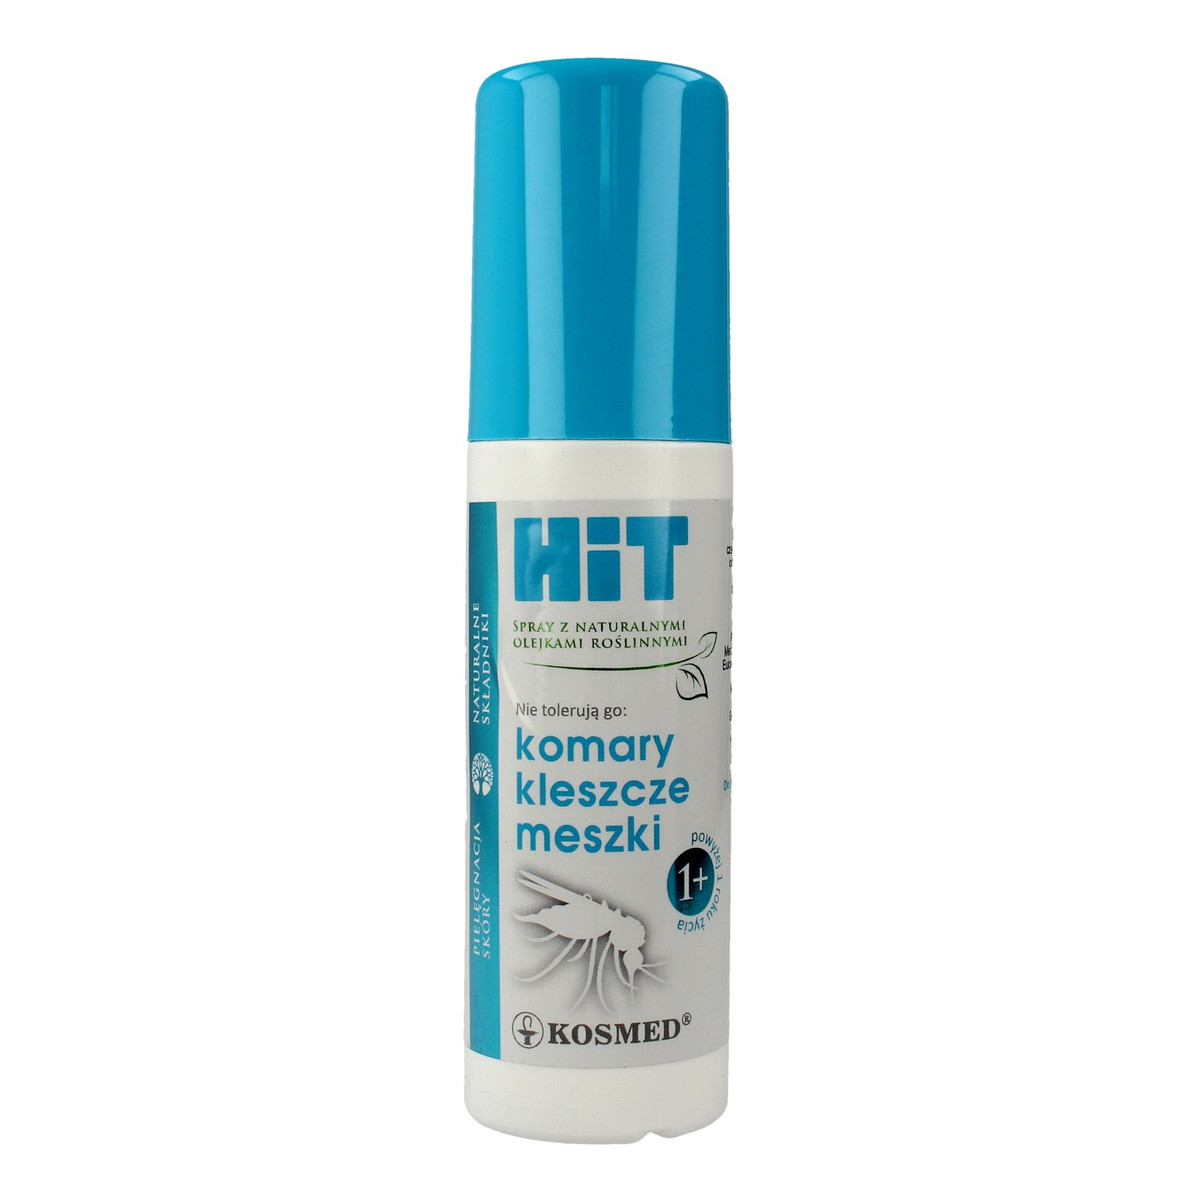 Kosmed Hit Spray odstraszający na komary, kleszcze i meszki 100ml